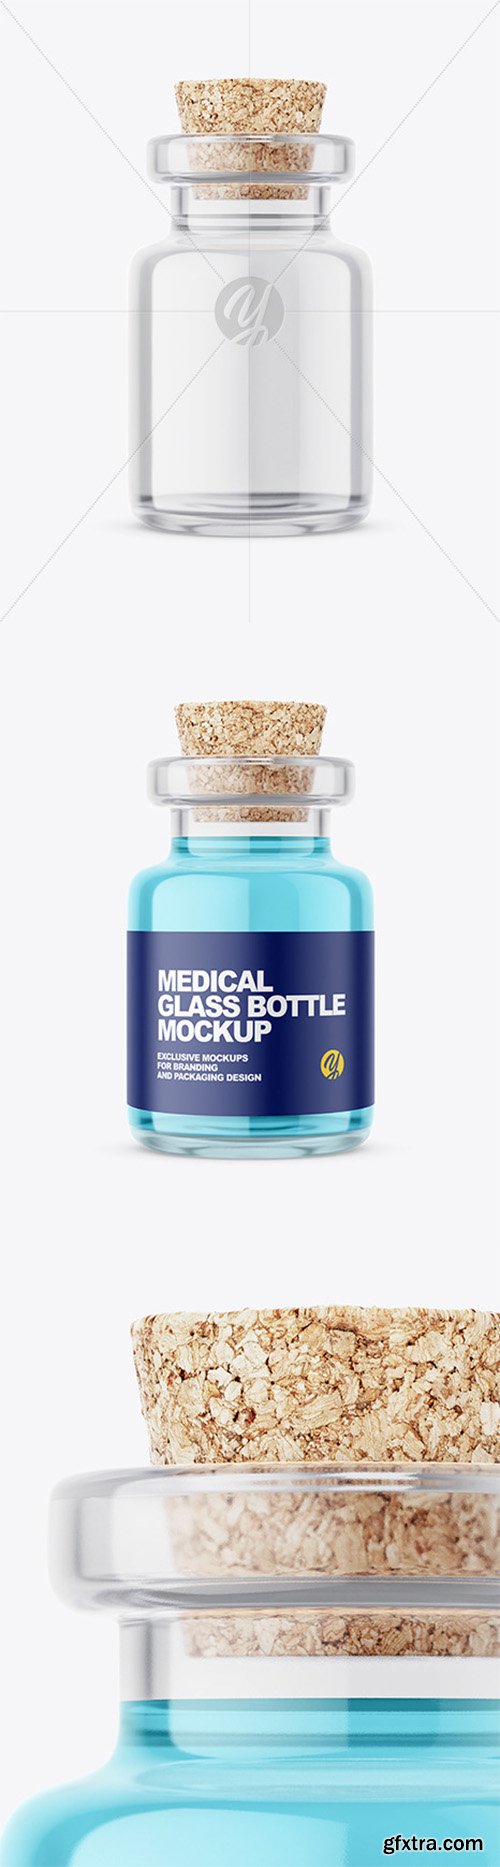 Glass Medical Bottle with Cork Mockup 58074